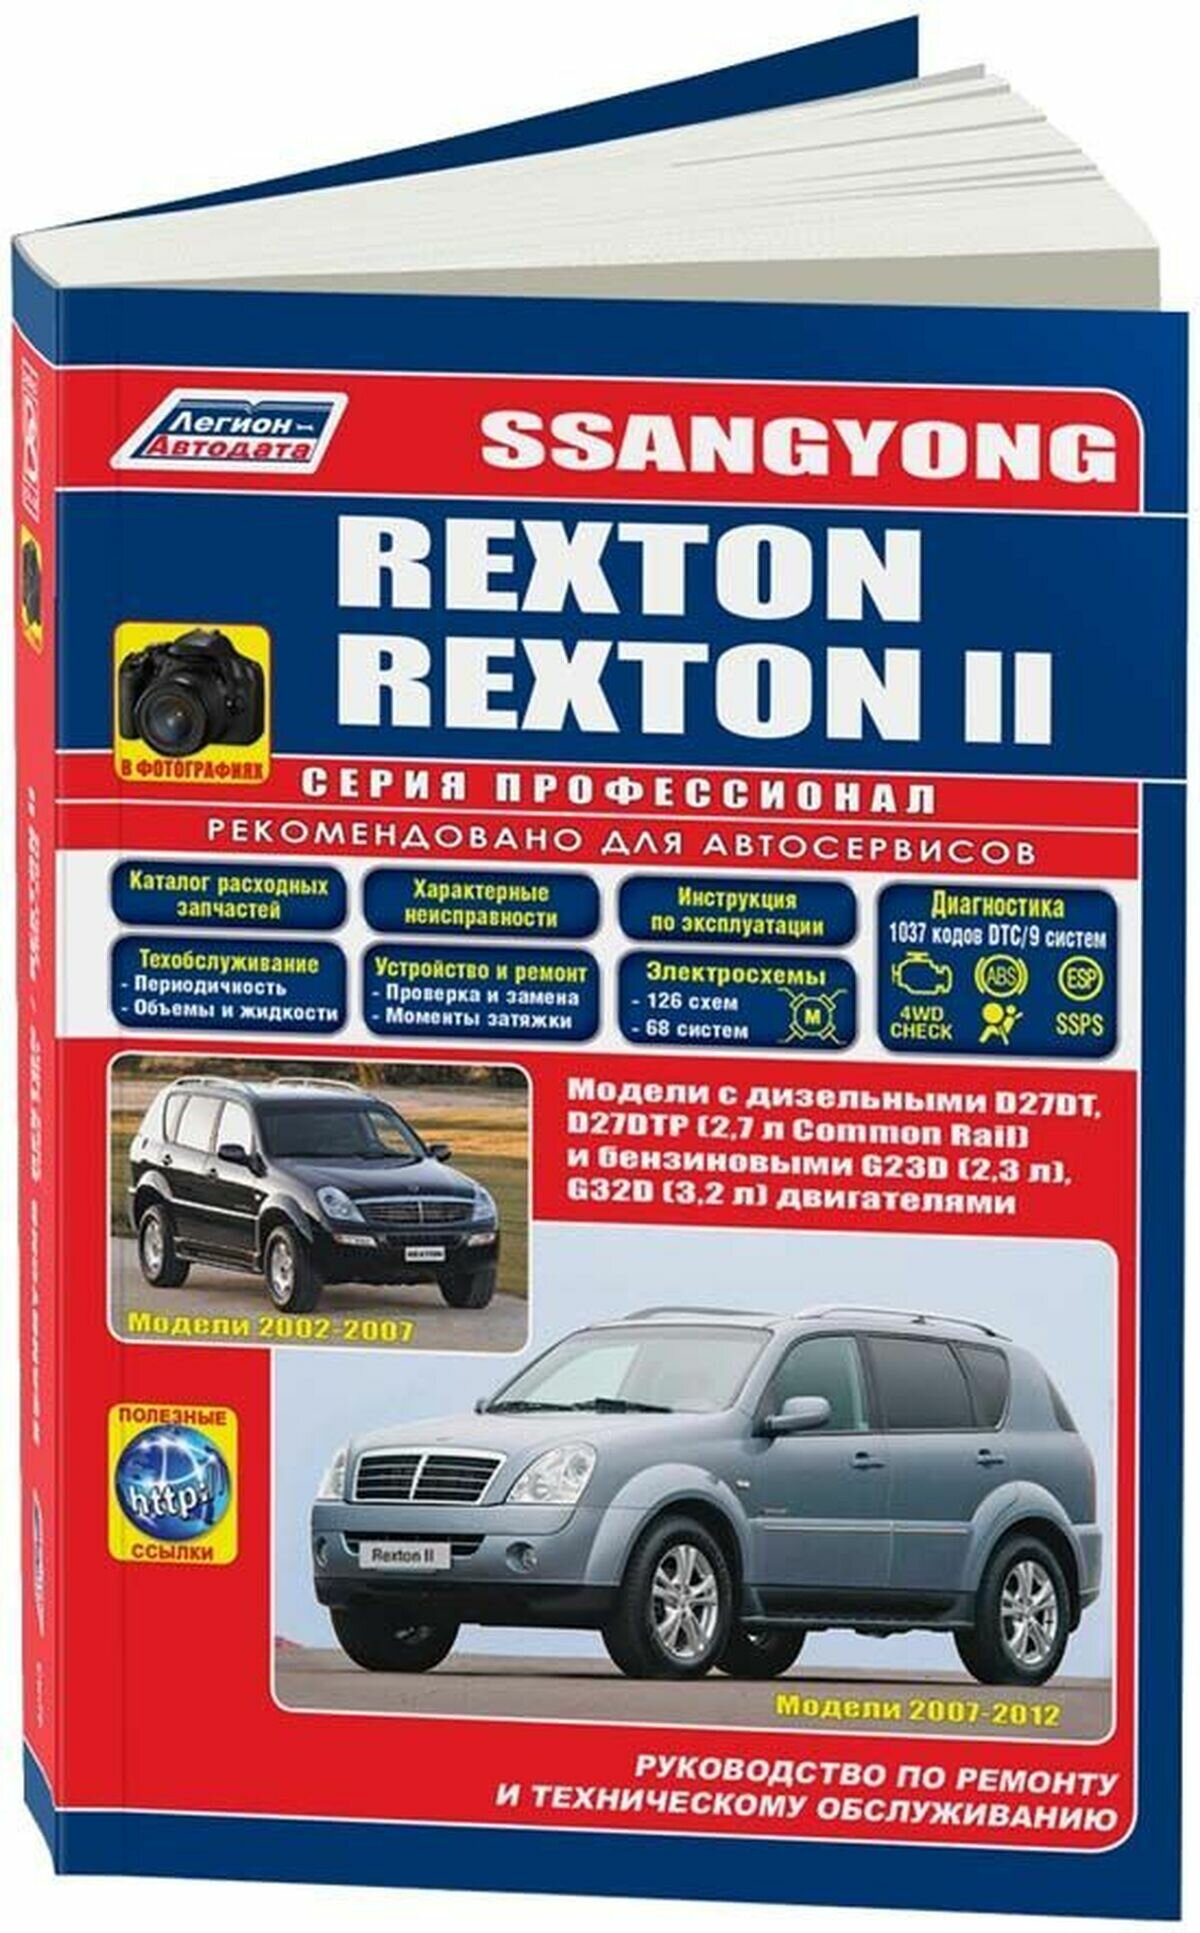 Автокнига: руководство / инструкция по ремонту и эксплуатации SSANG YONG REXTON (ссанг йонг рекстон) бензин / дизель с 2002 года выпуска включая рестайлинговые модели, 978-588850-503-8, издательство Легион-Aвтодата